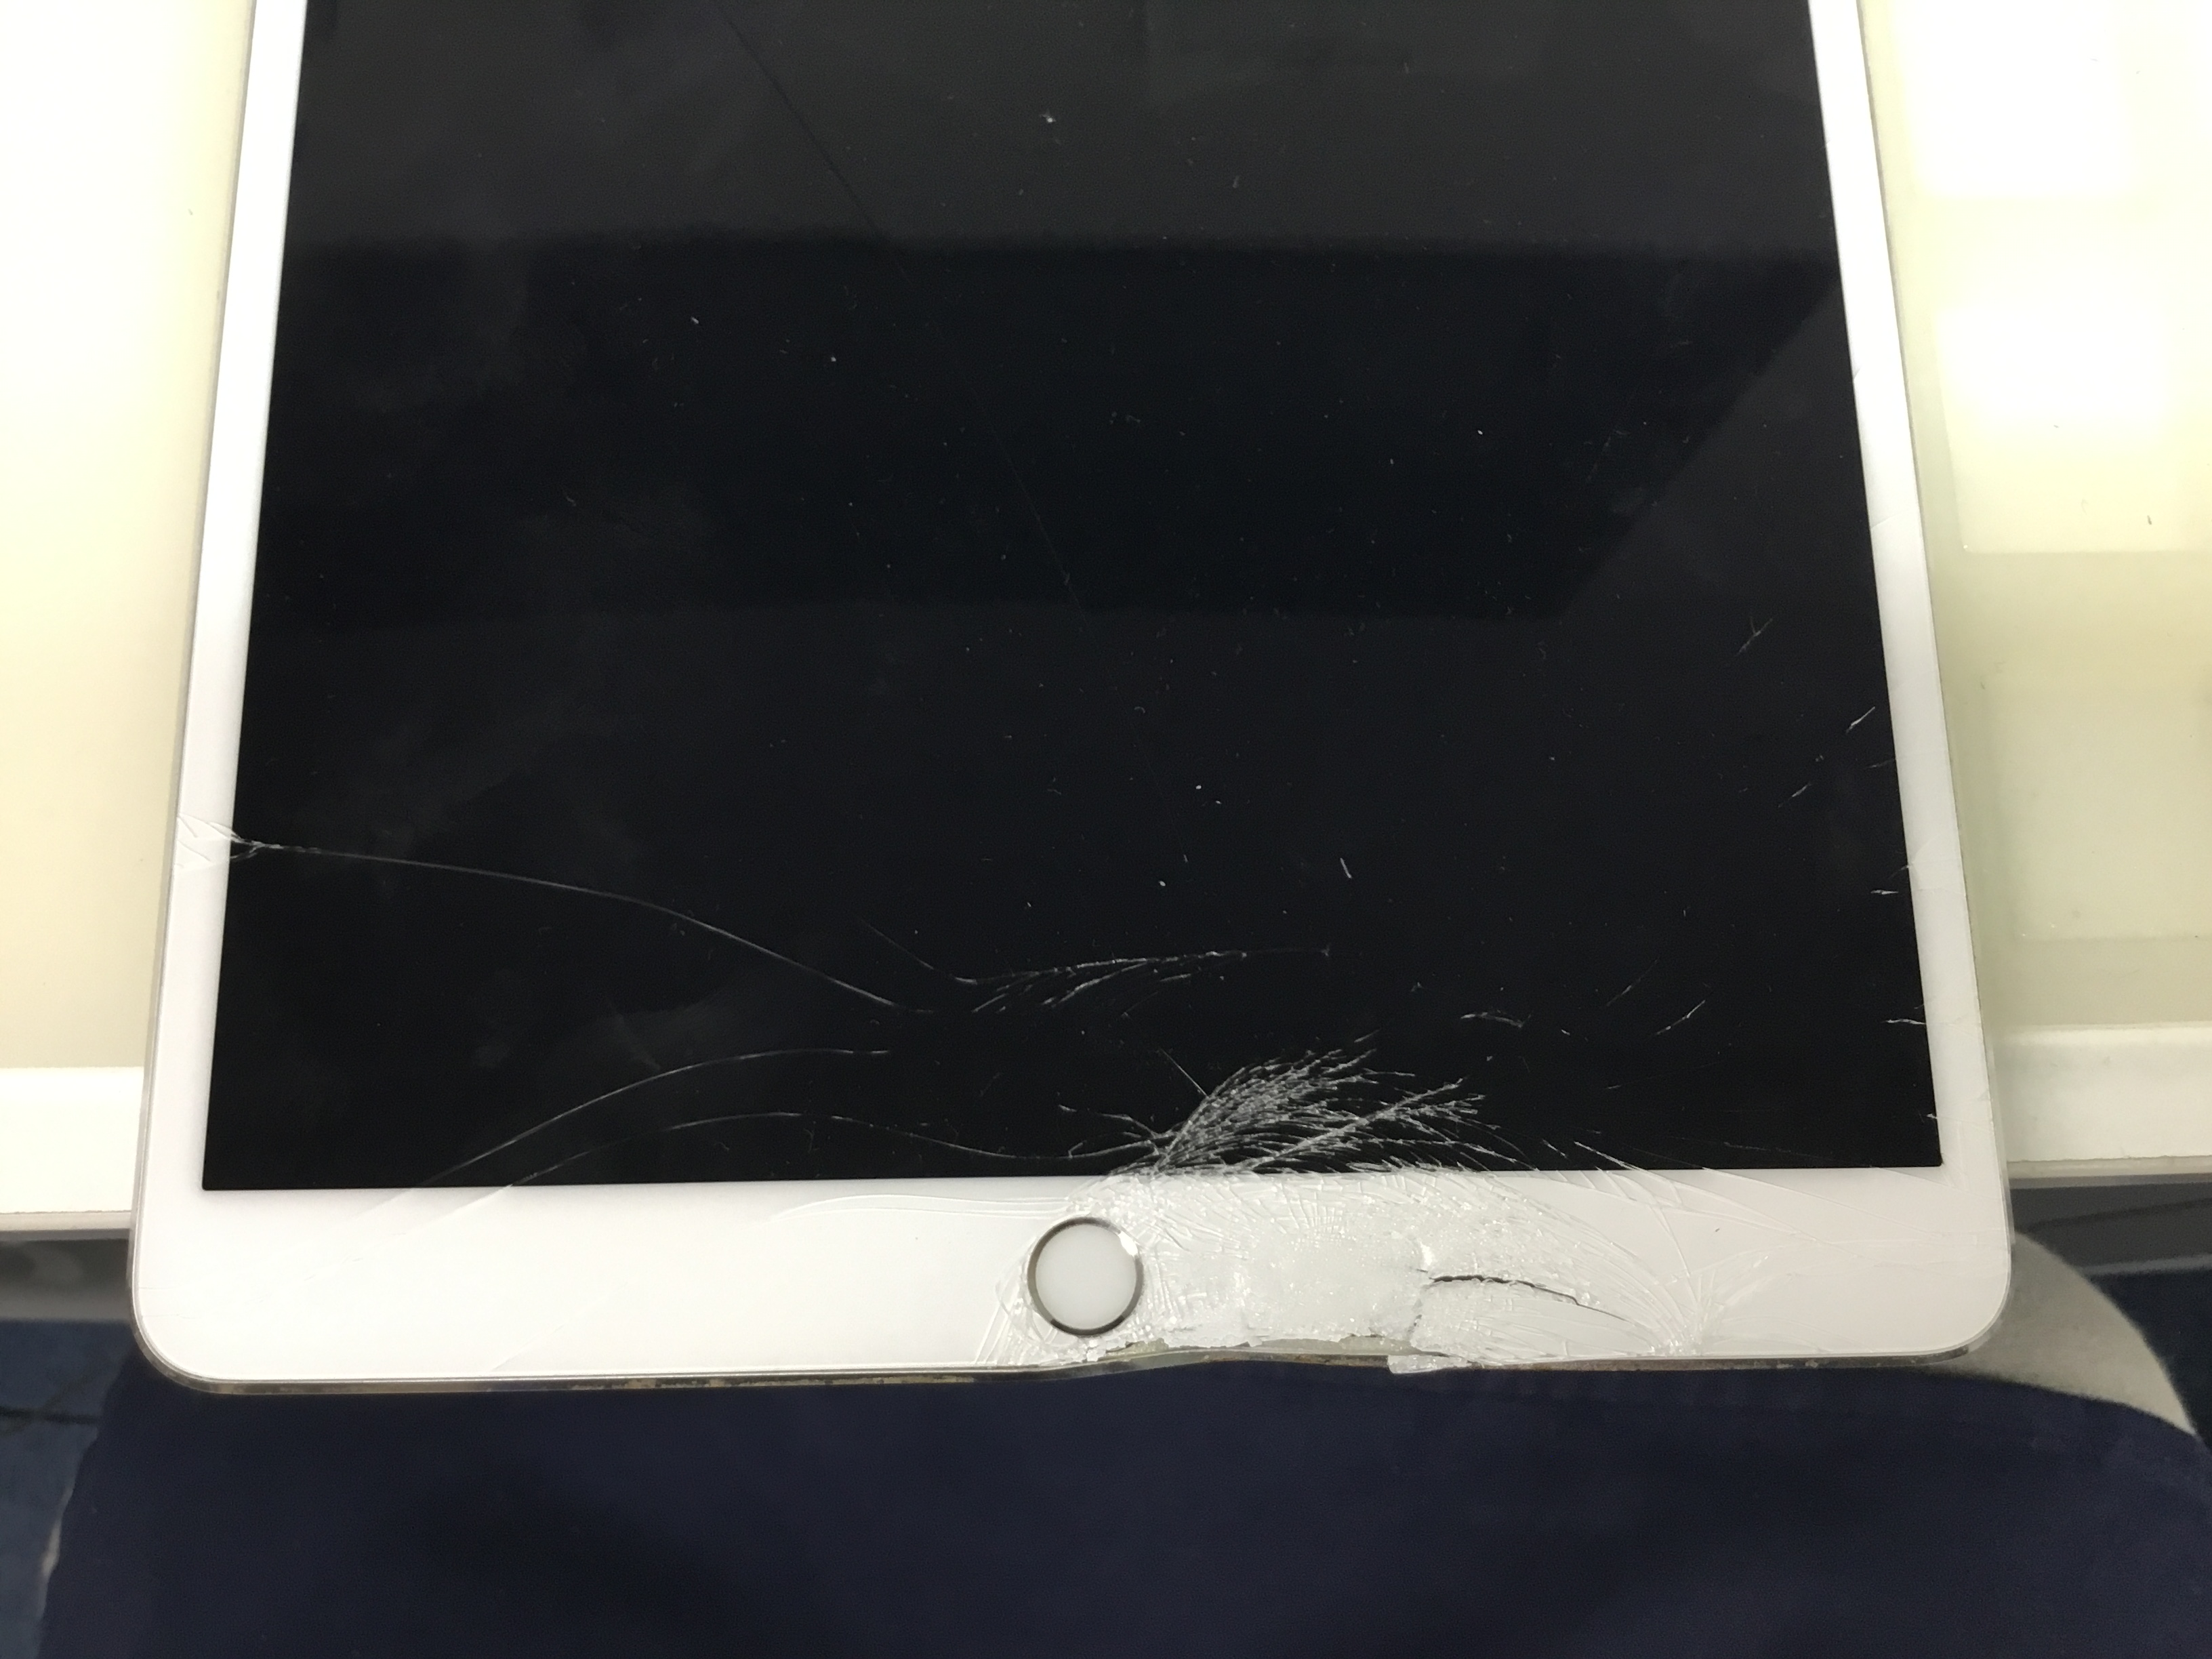 iPadガラス割れ フレームが歪んでる端末でも修理可能。